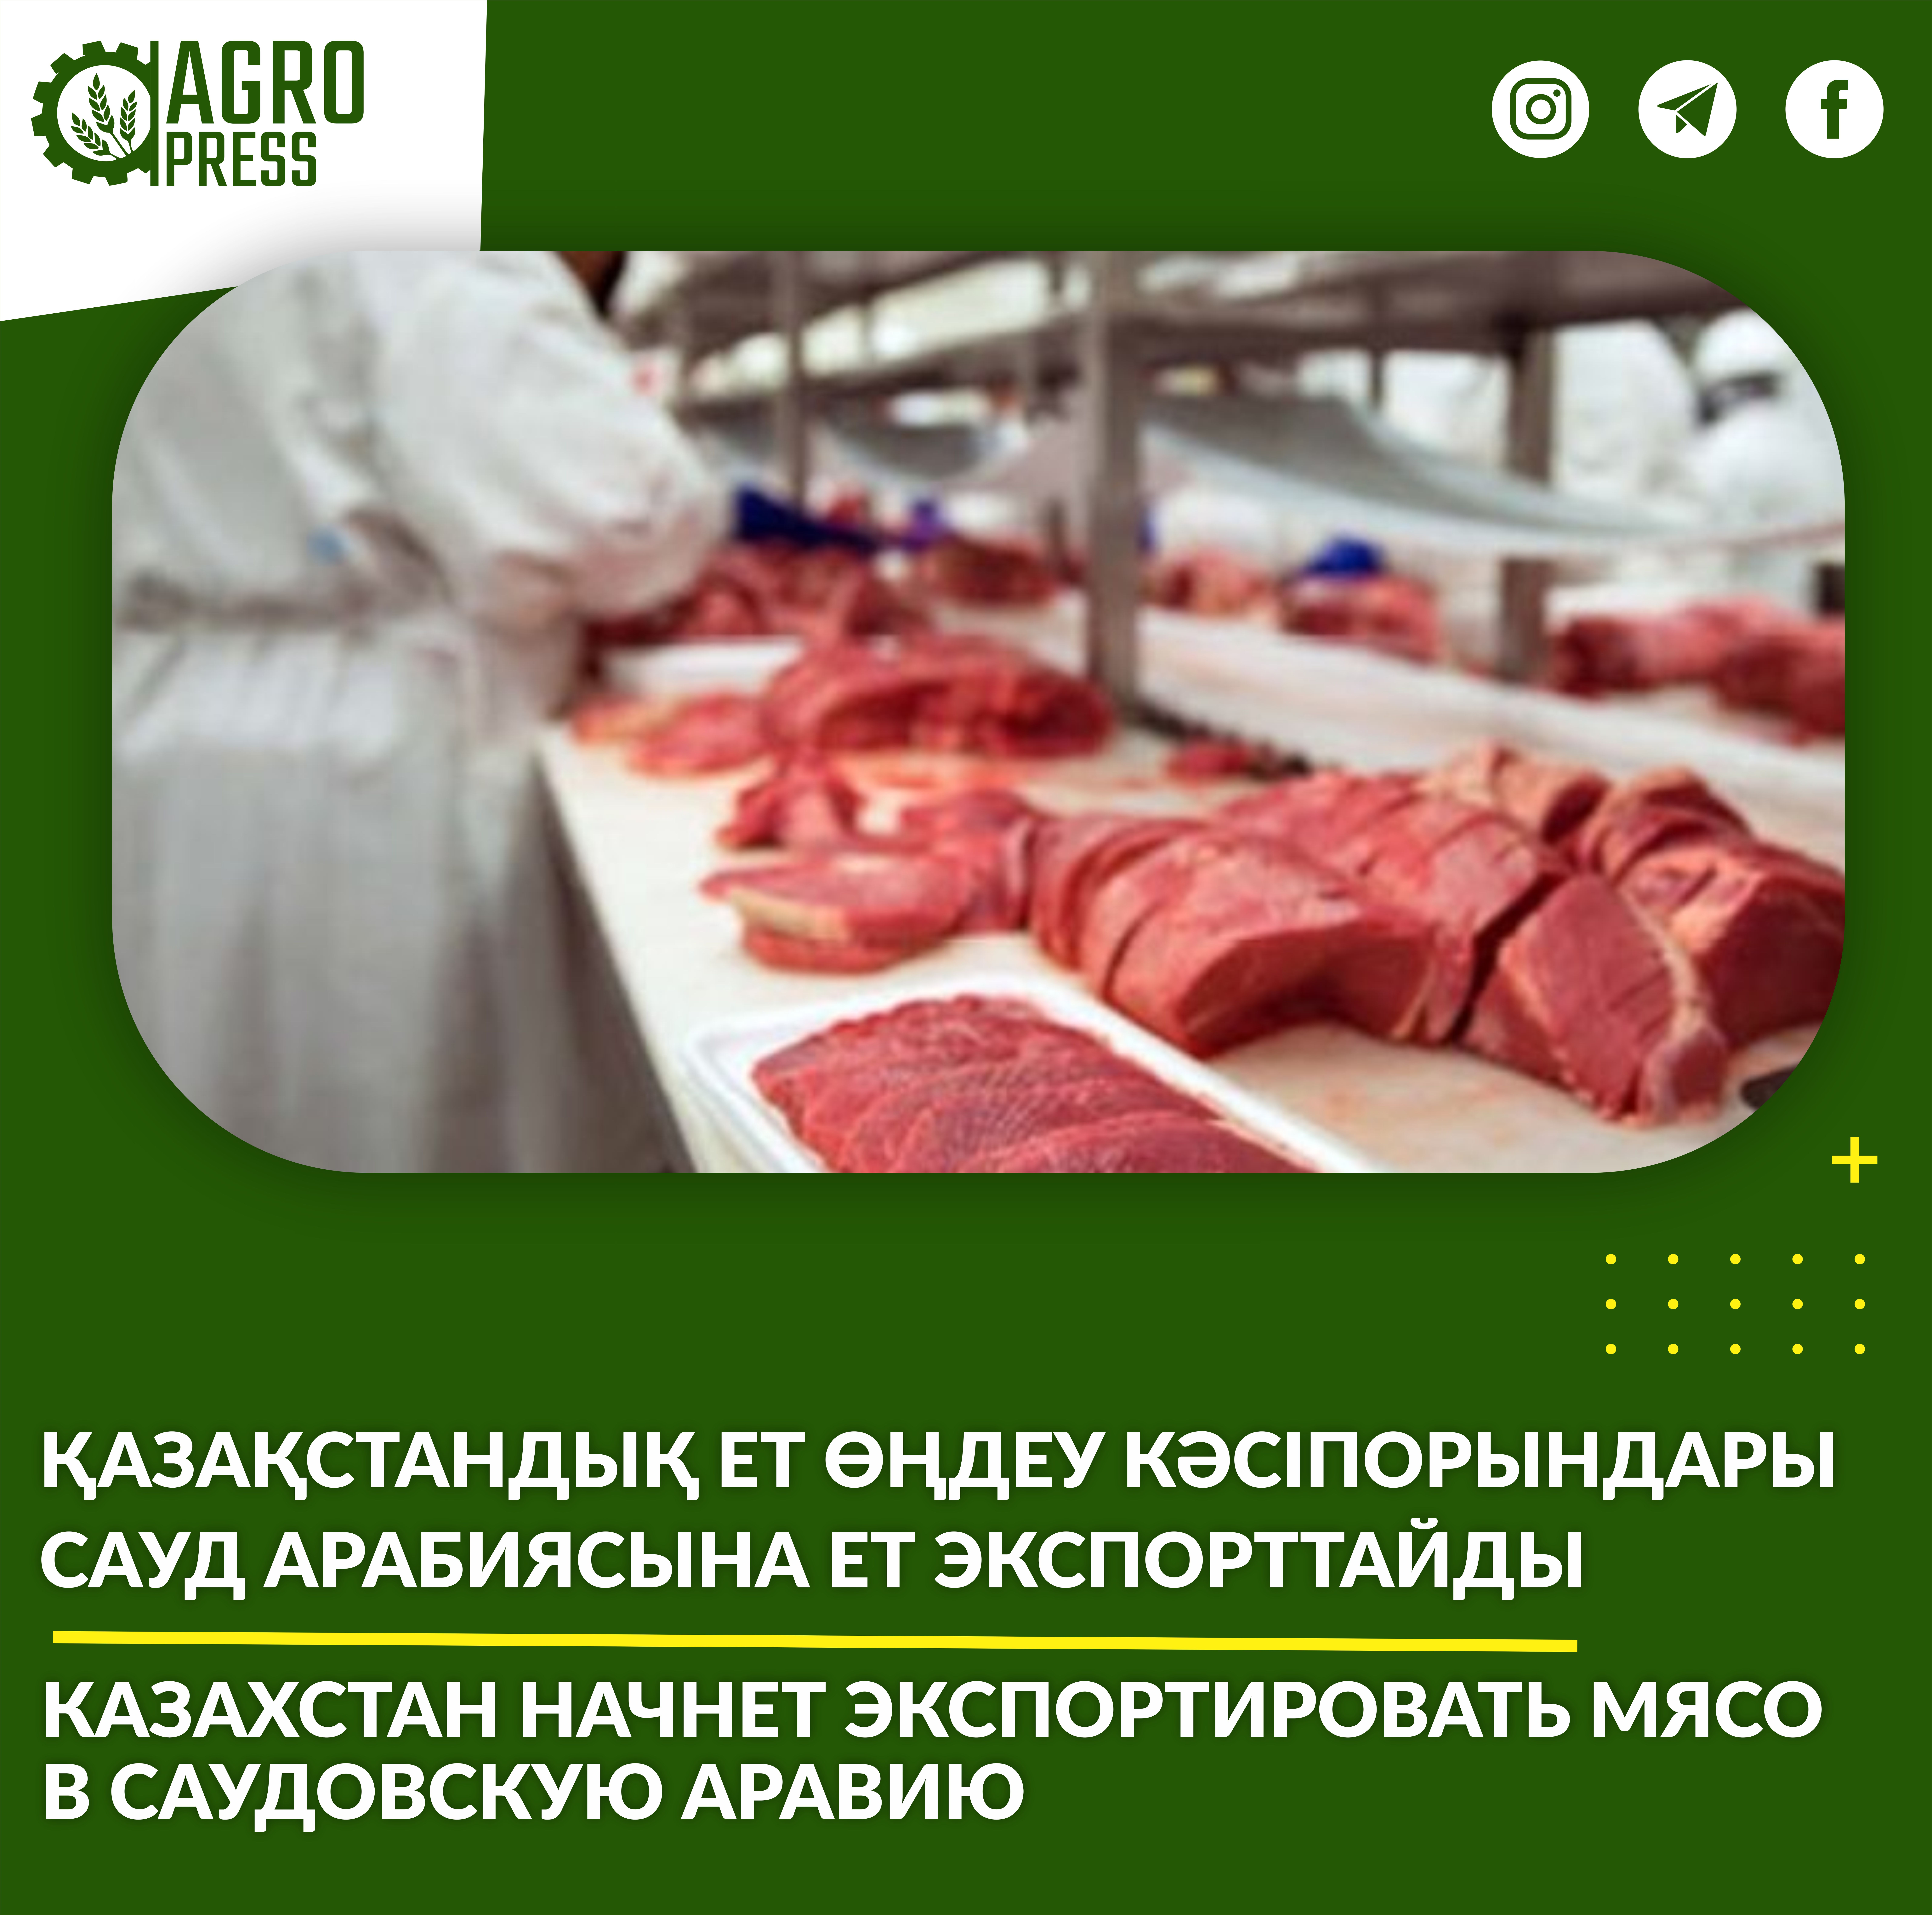 Казахстан начнет экспортировать мясо в Саудовскую Аравию